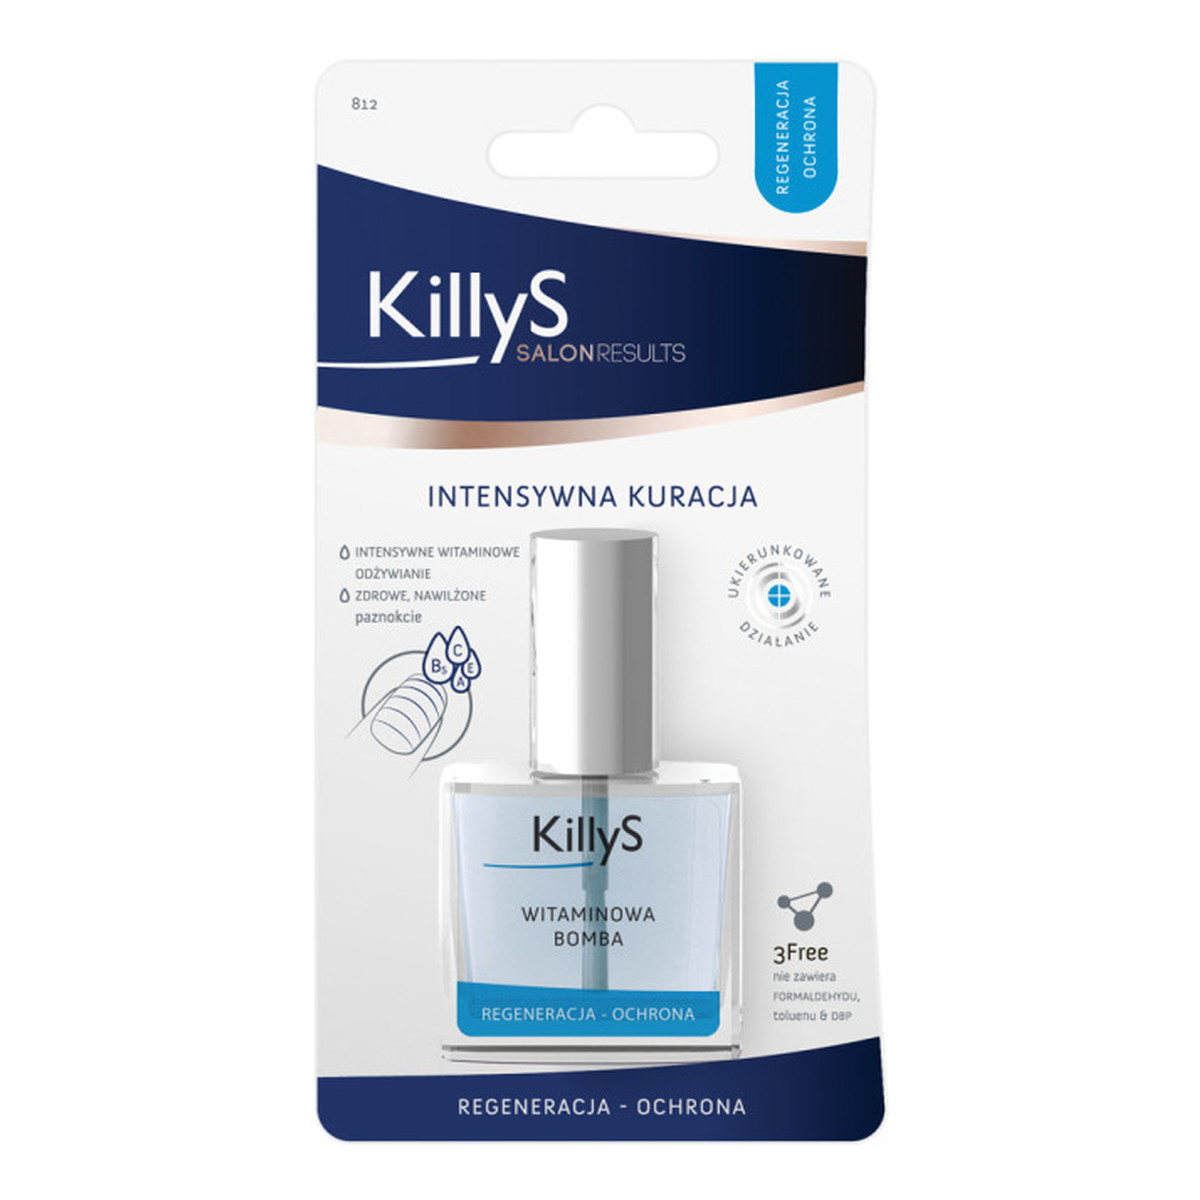 KillyS Salon Results witaminowa bomba intensywna kuracja odżywka do osłabionych i łamiących się paznokci 10ml